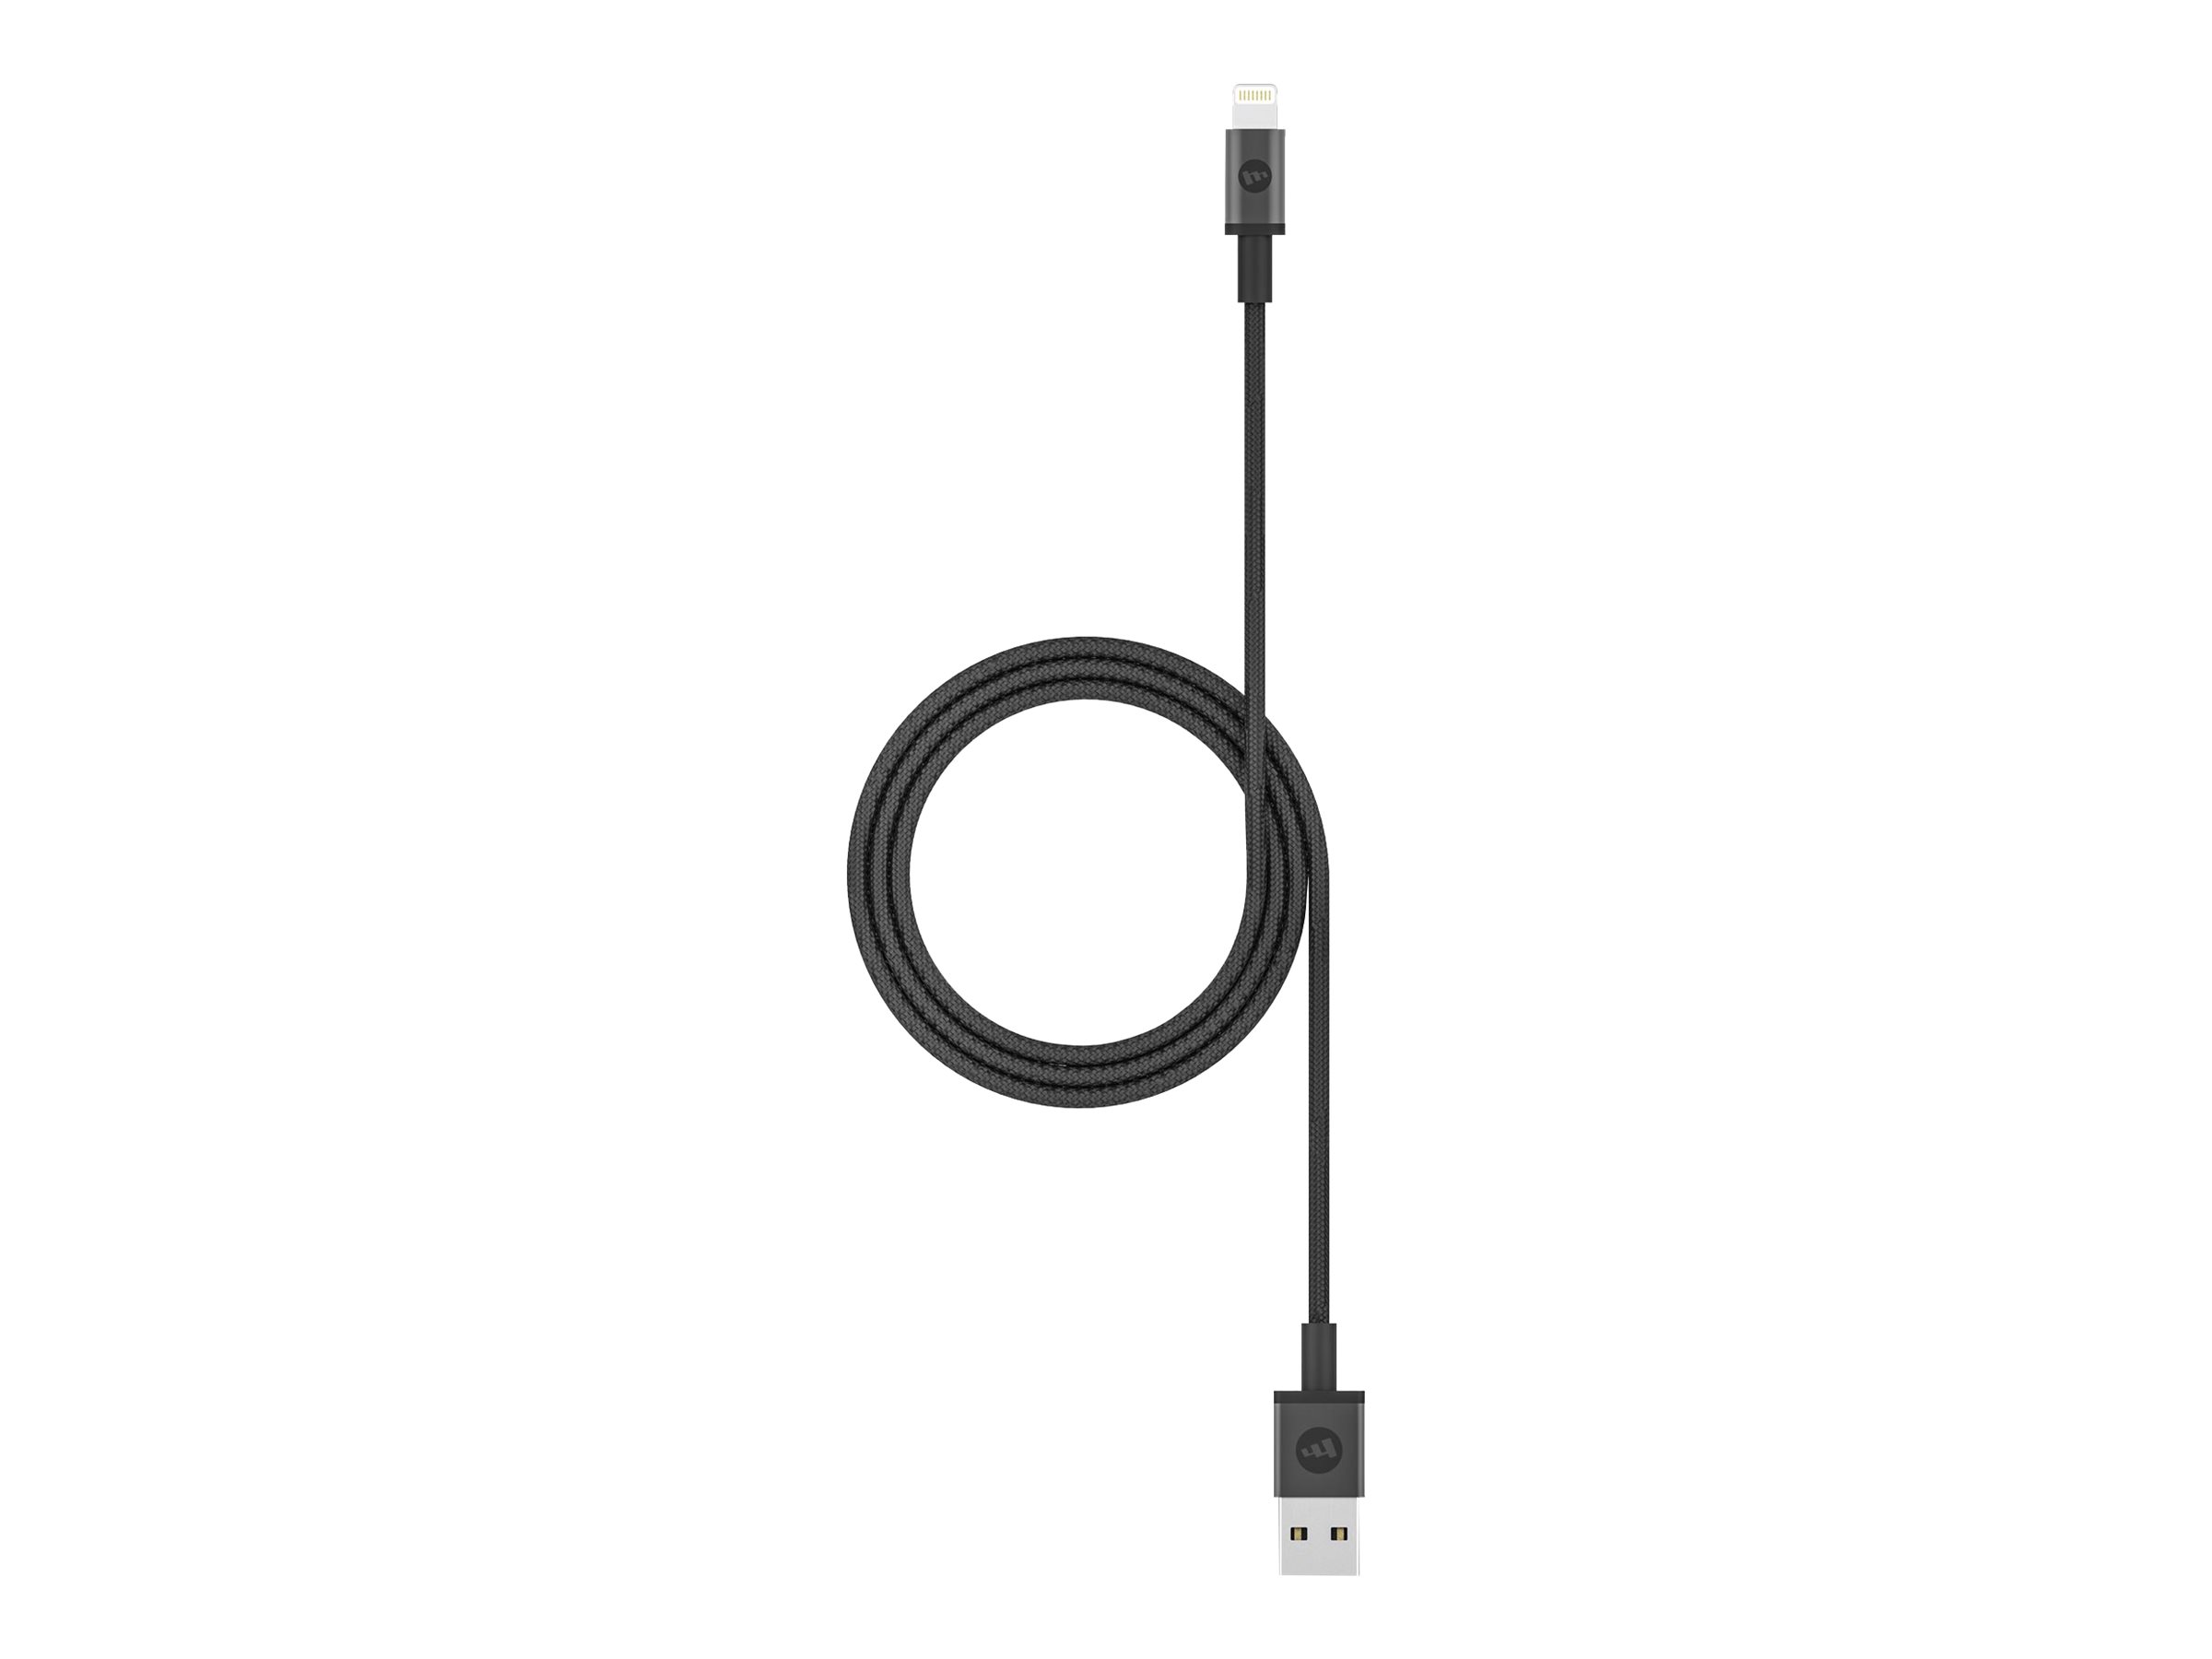 ZAGG mophie - Lightning-Kabel - Lightning männlich zu USB männlich - 1 m - Schwarz - für Apple iPad/iPhone/iPod (Lightning)